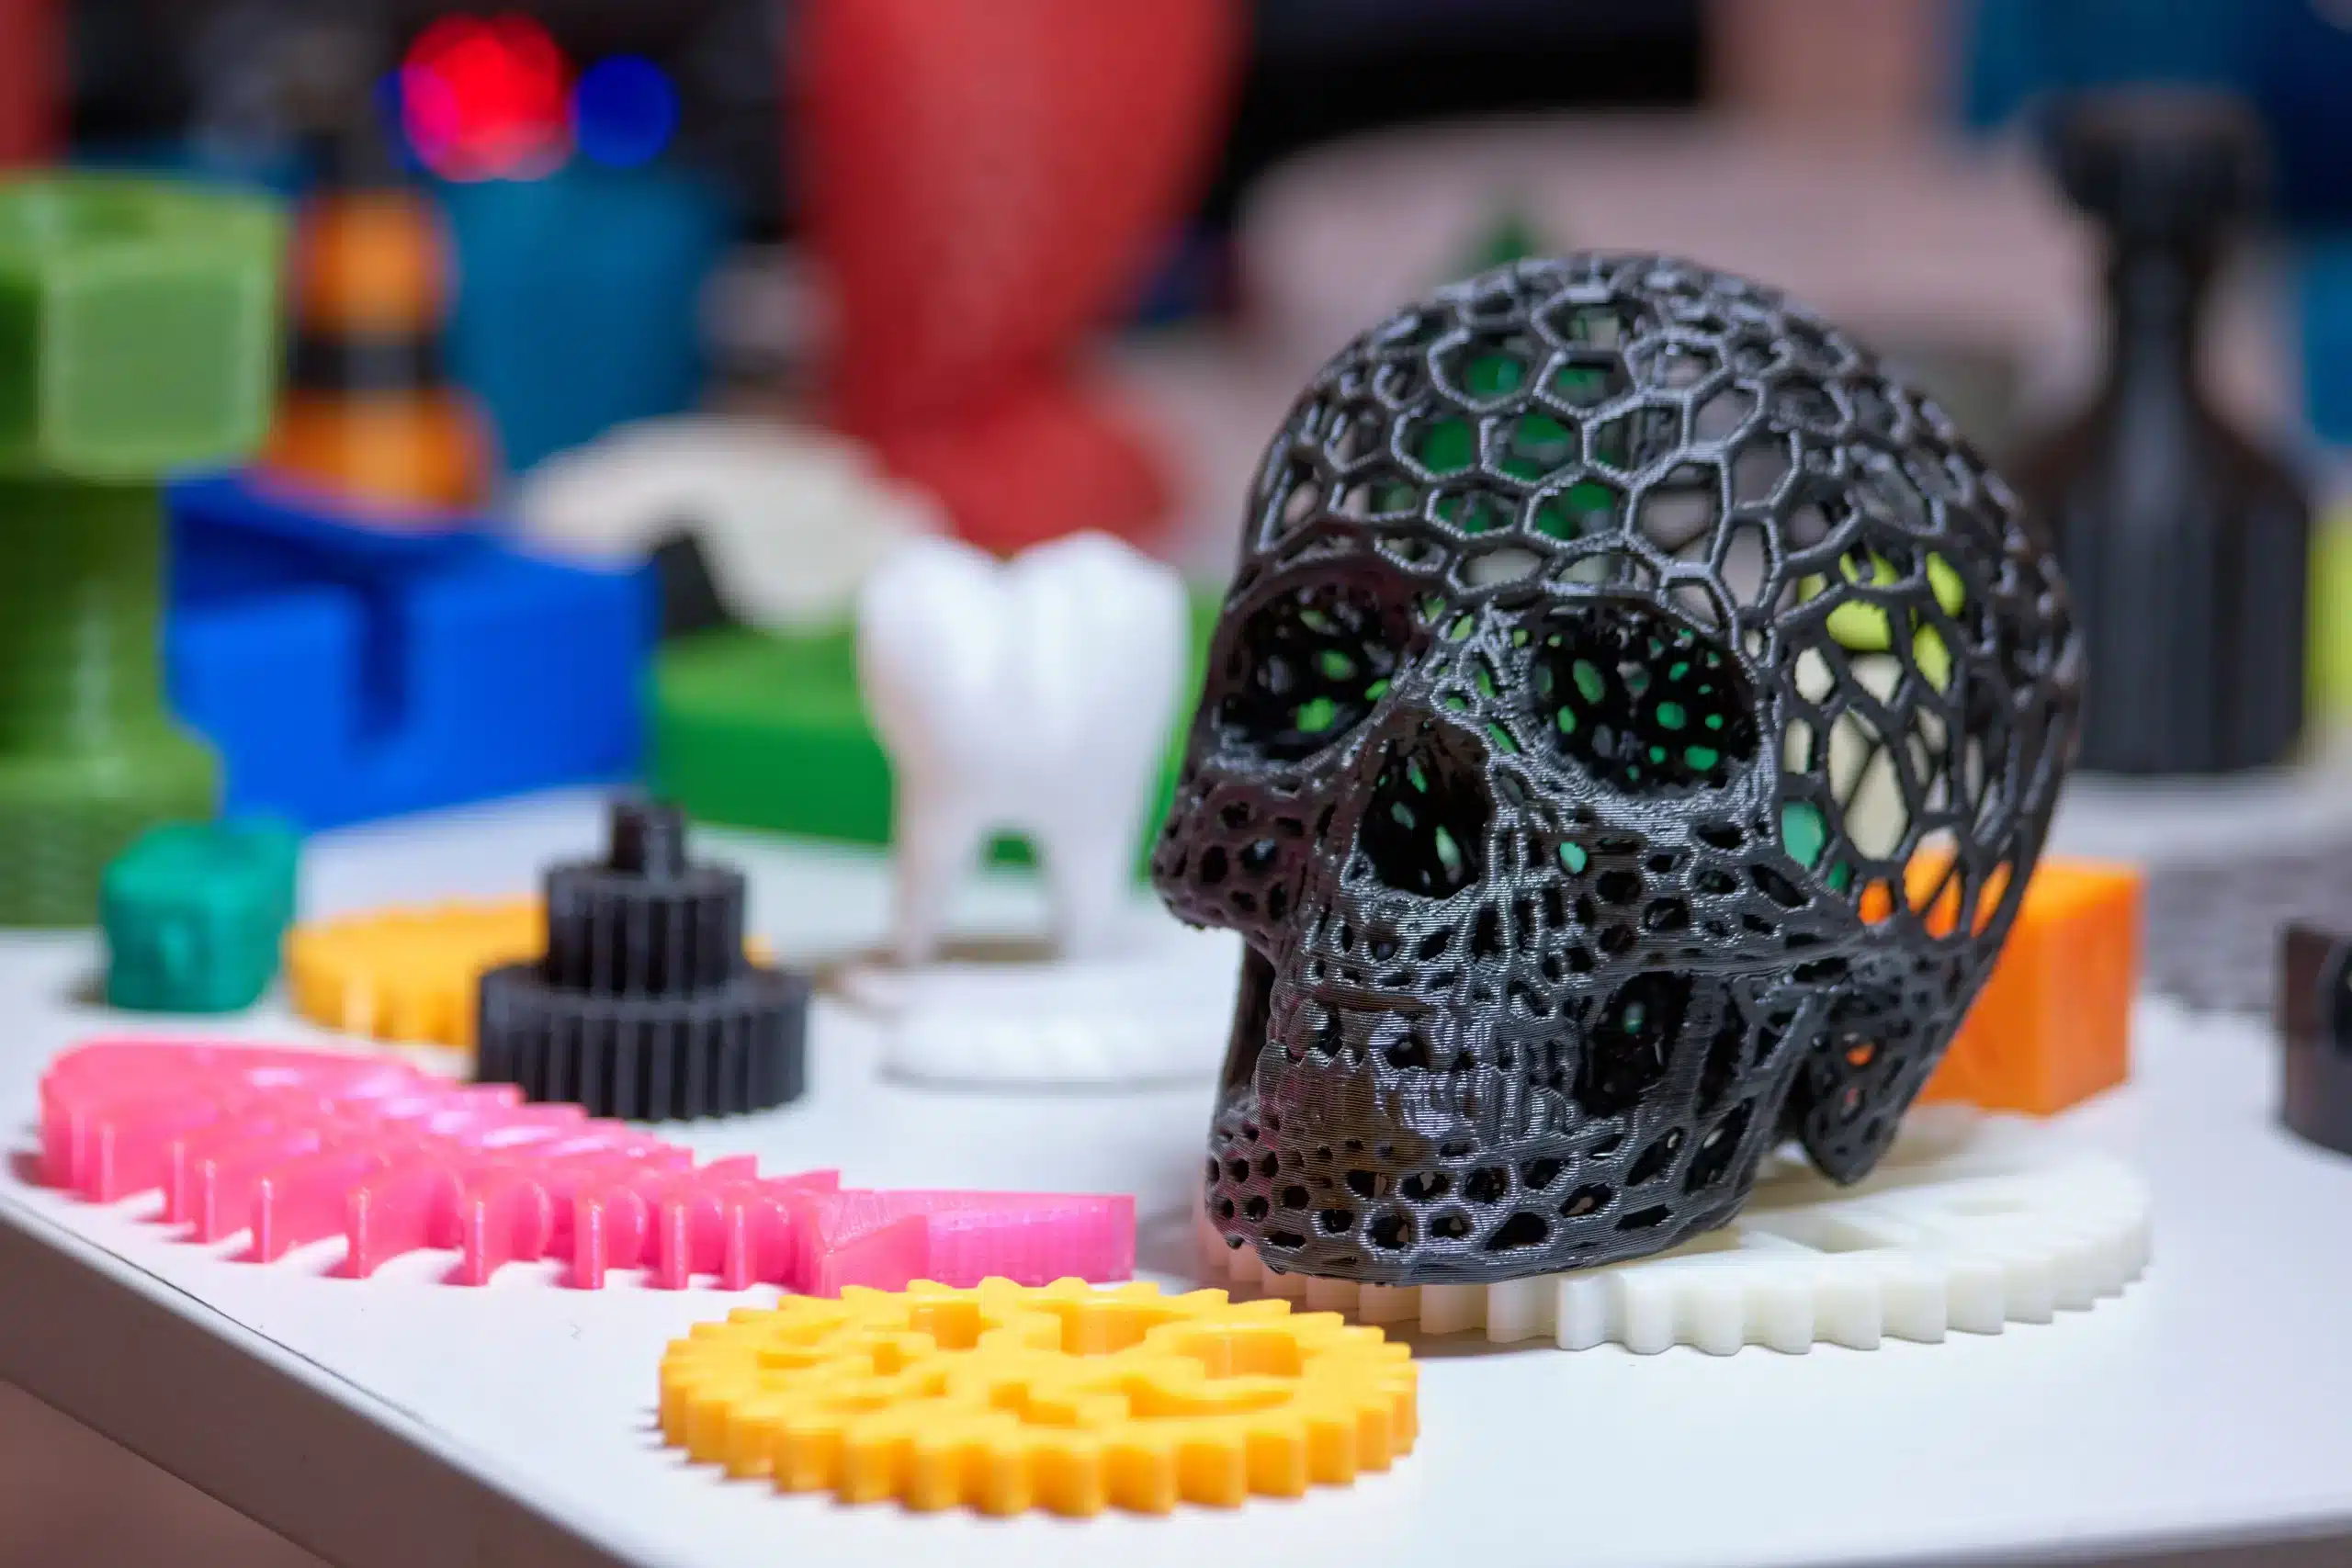 3D Print Shop